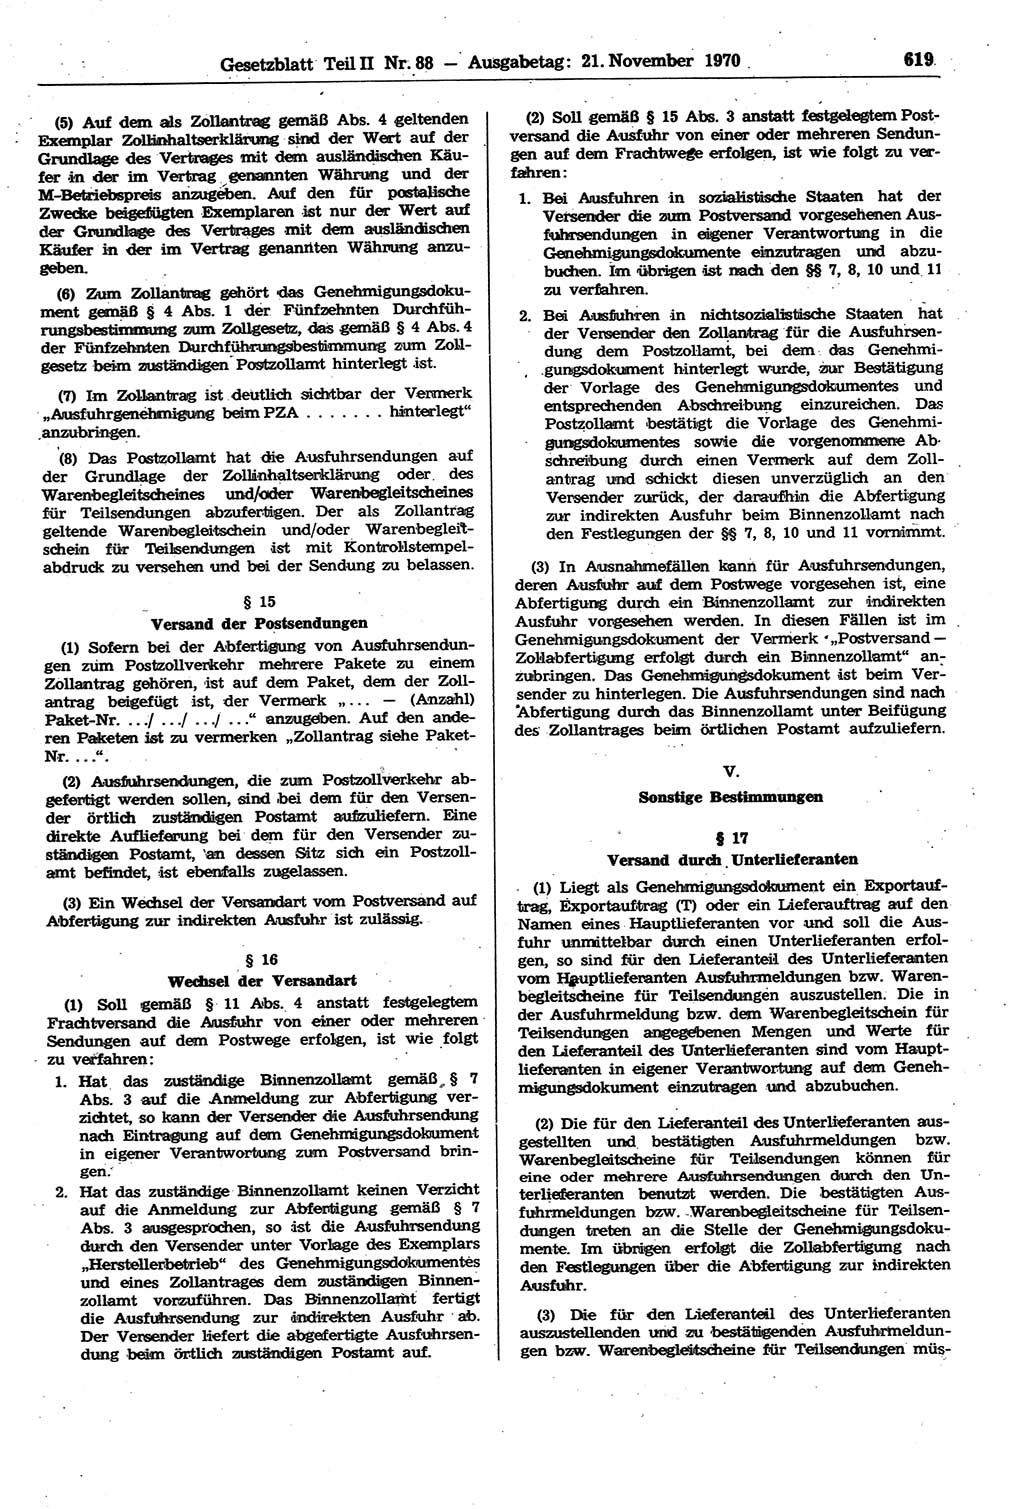 Gesetzblatt (GBl.) der Deutschen Demokratischen Republik (DDR) Teil ⅠⅠ 1970, Seite 619 (GBl. DDR ⅠⅠ 1970, S. 619)